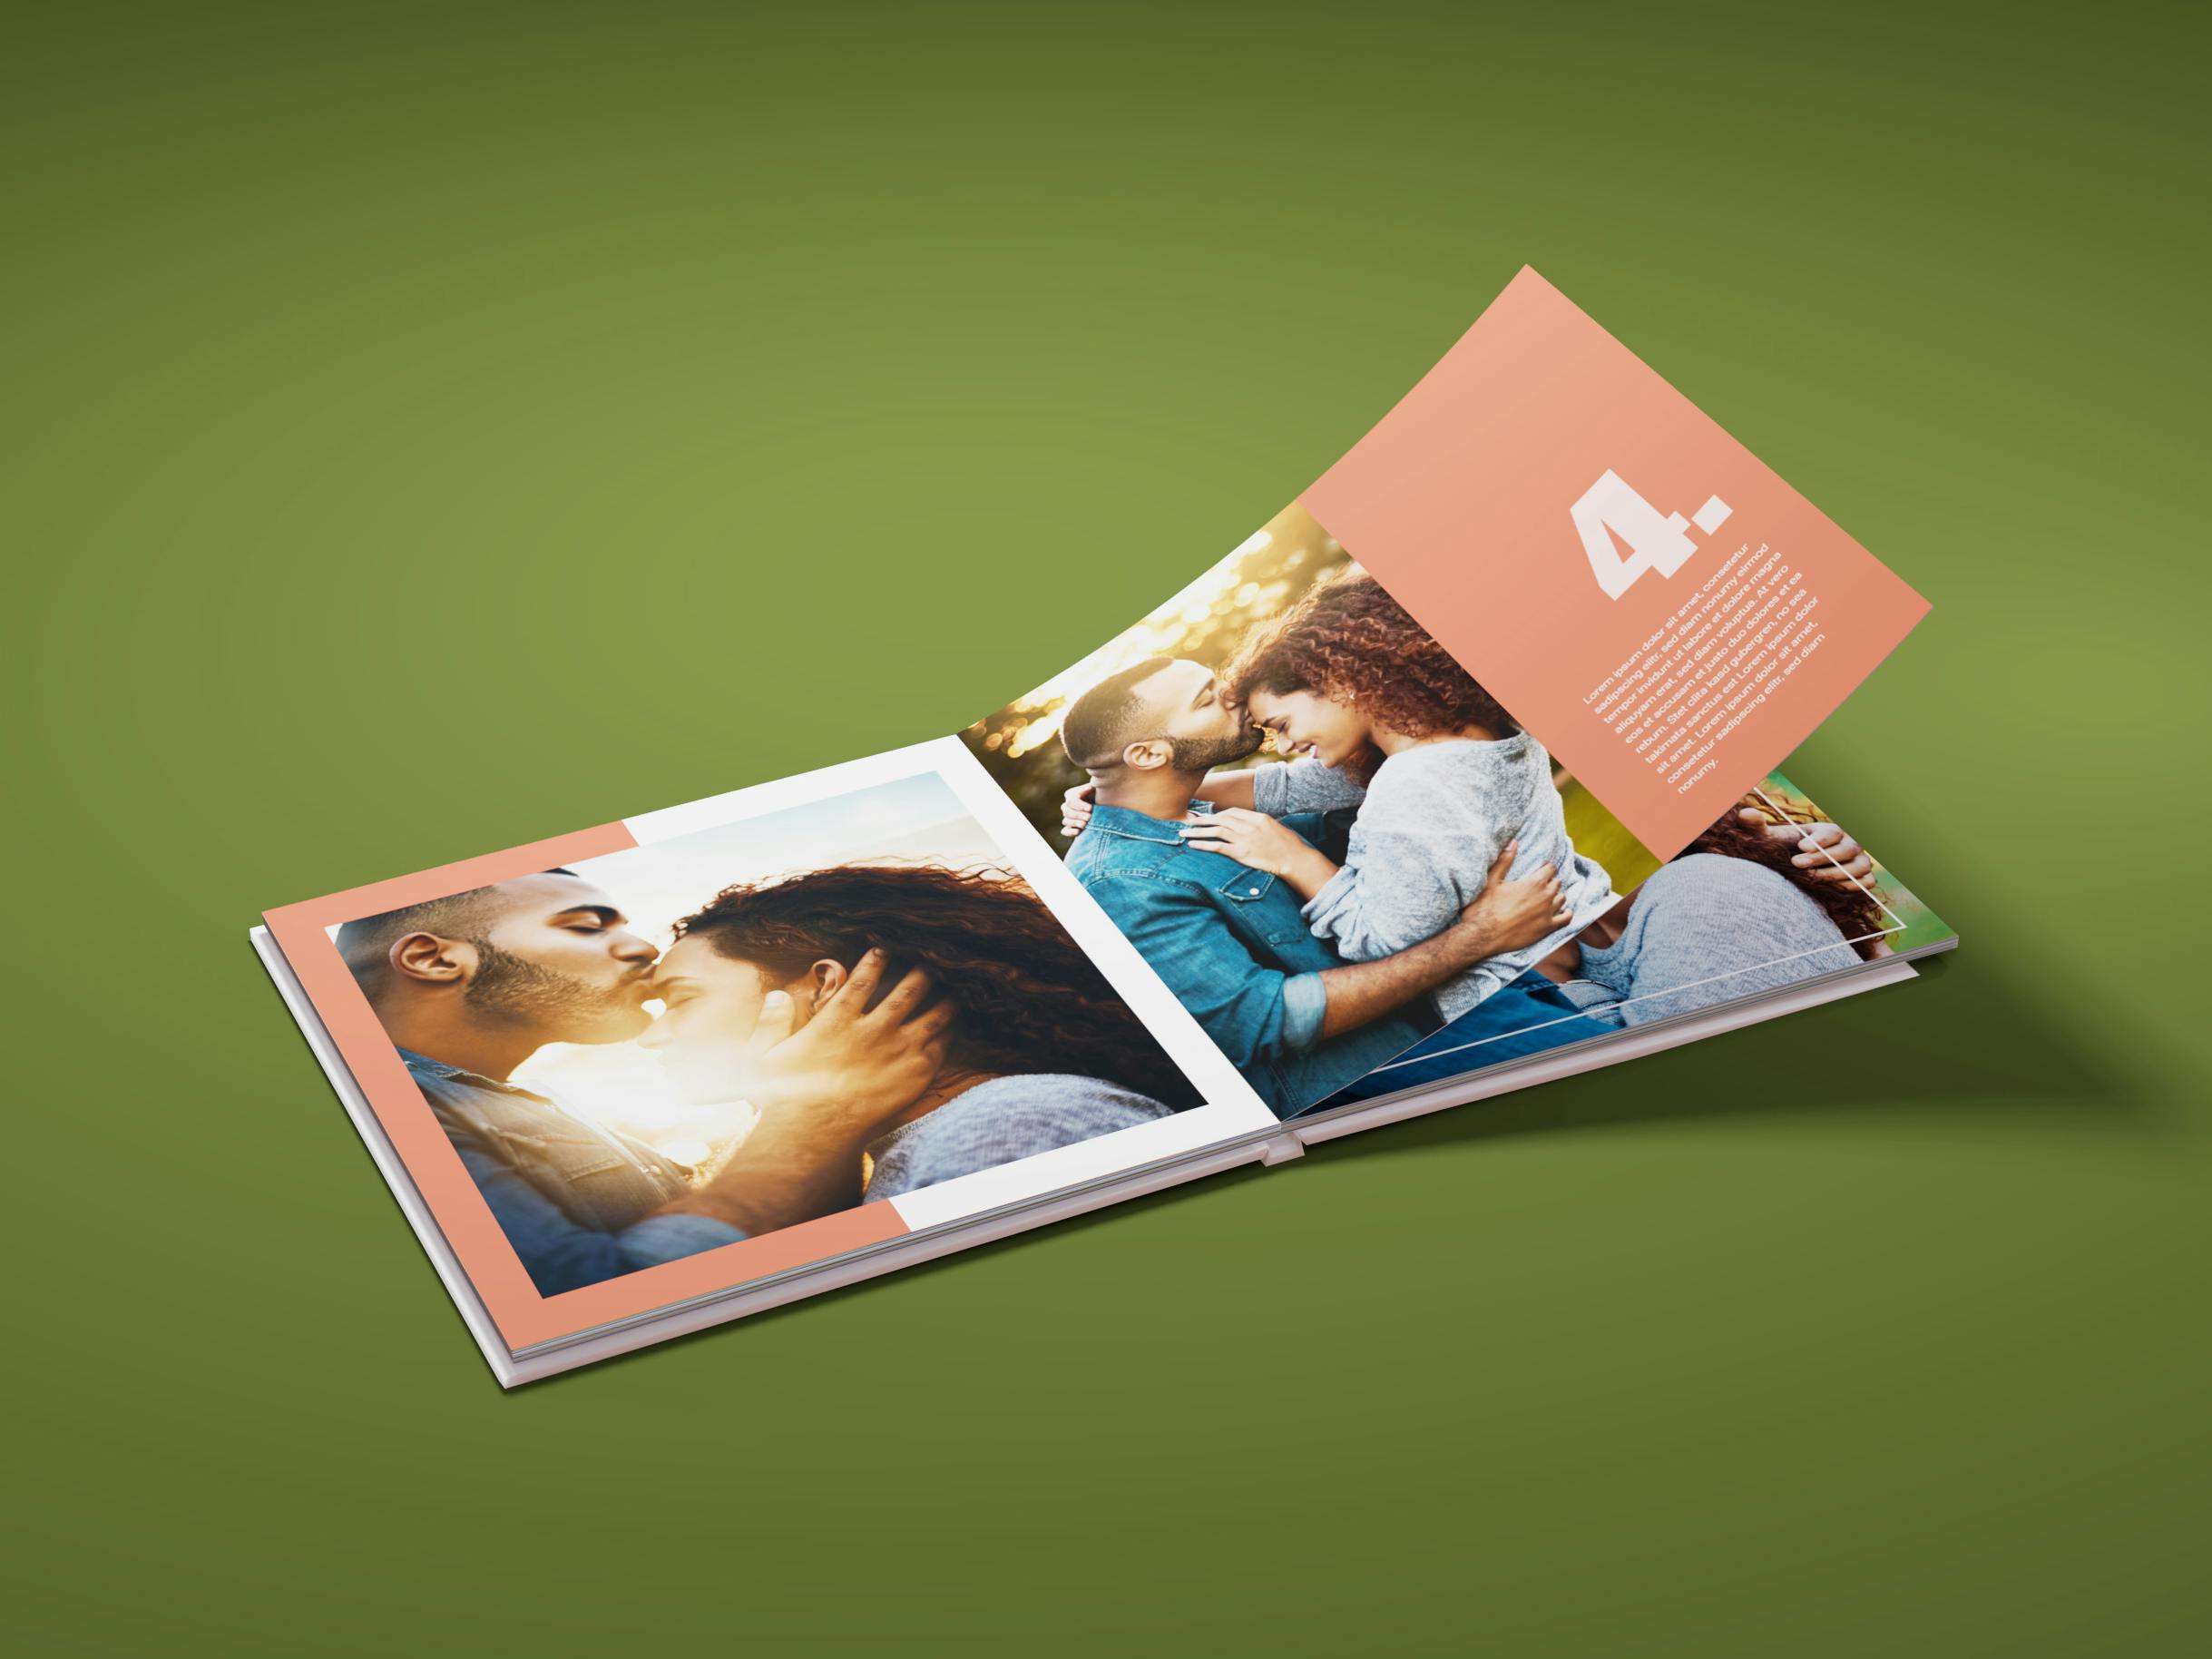 Aufgeschlagenes quadratisches Fotobuch mit Pärchenmotiven auf grünem Hintergrund